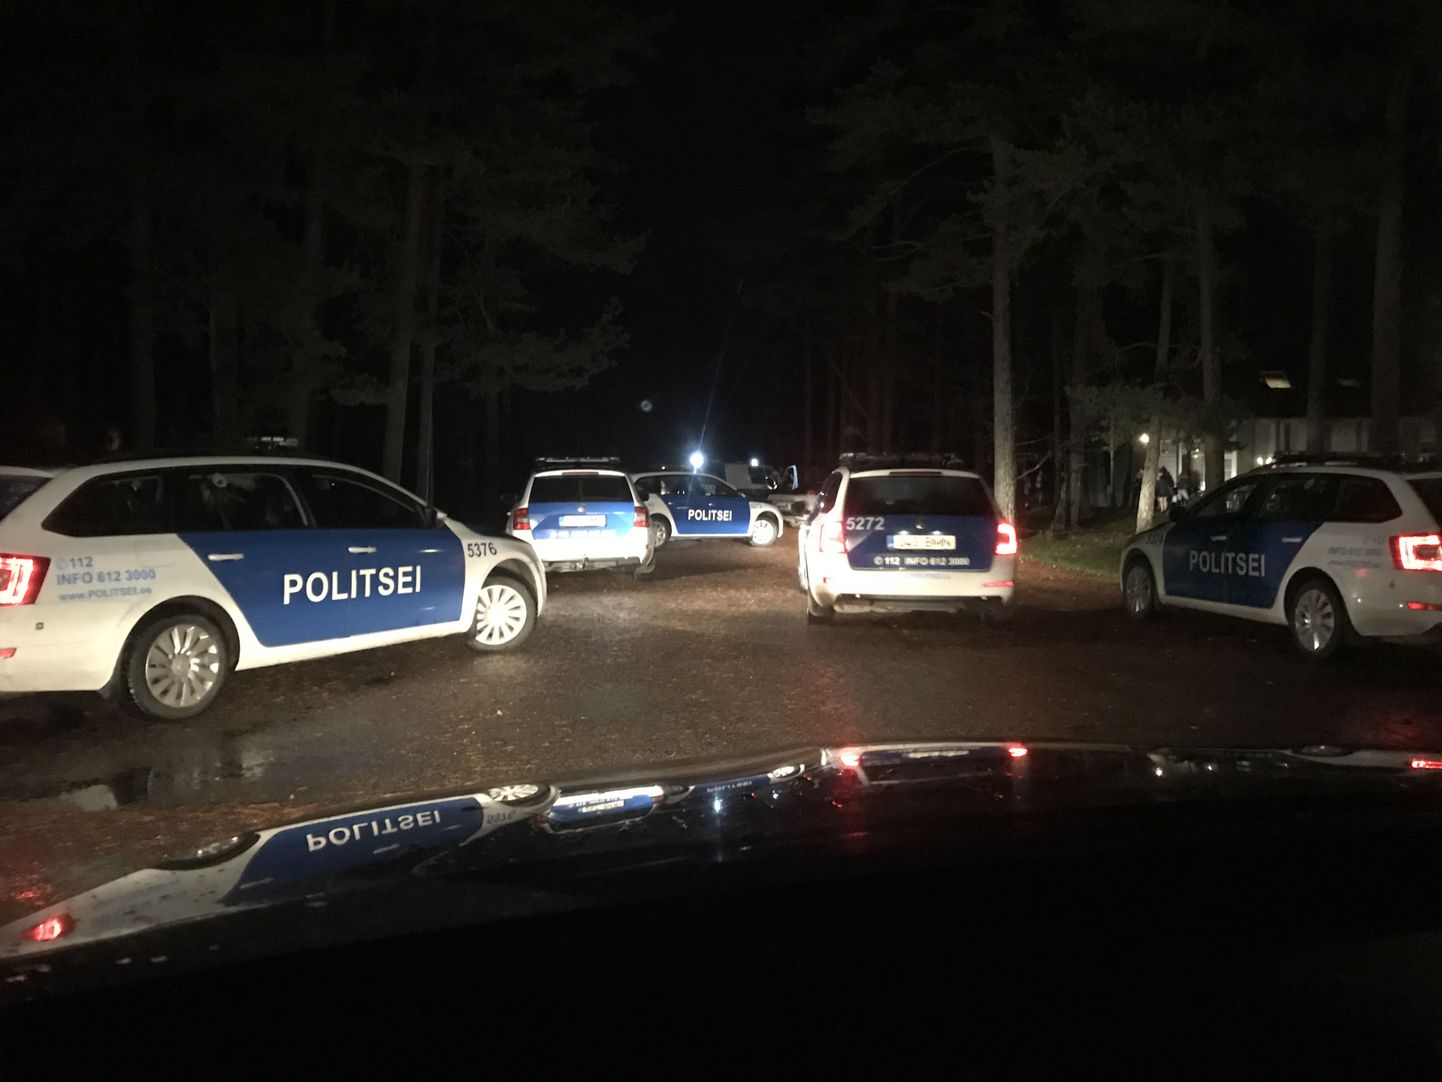 Laupäeval kella 22.30 aegu sõitis Audru vallas Valgeranna külas Andropoffi villa õuele kümmekond politseiautot. Hiljem tuli neid juurdegi.